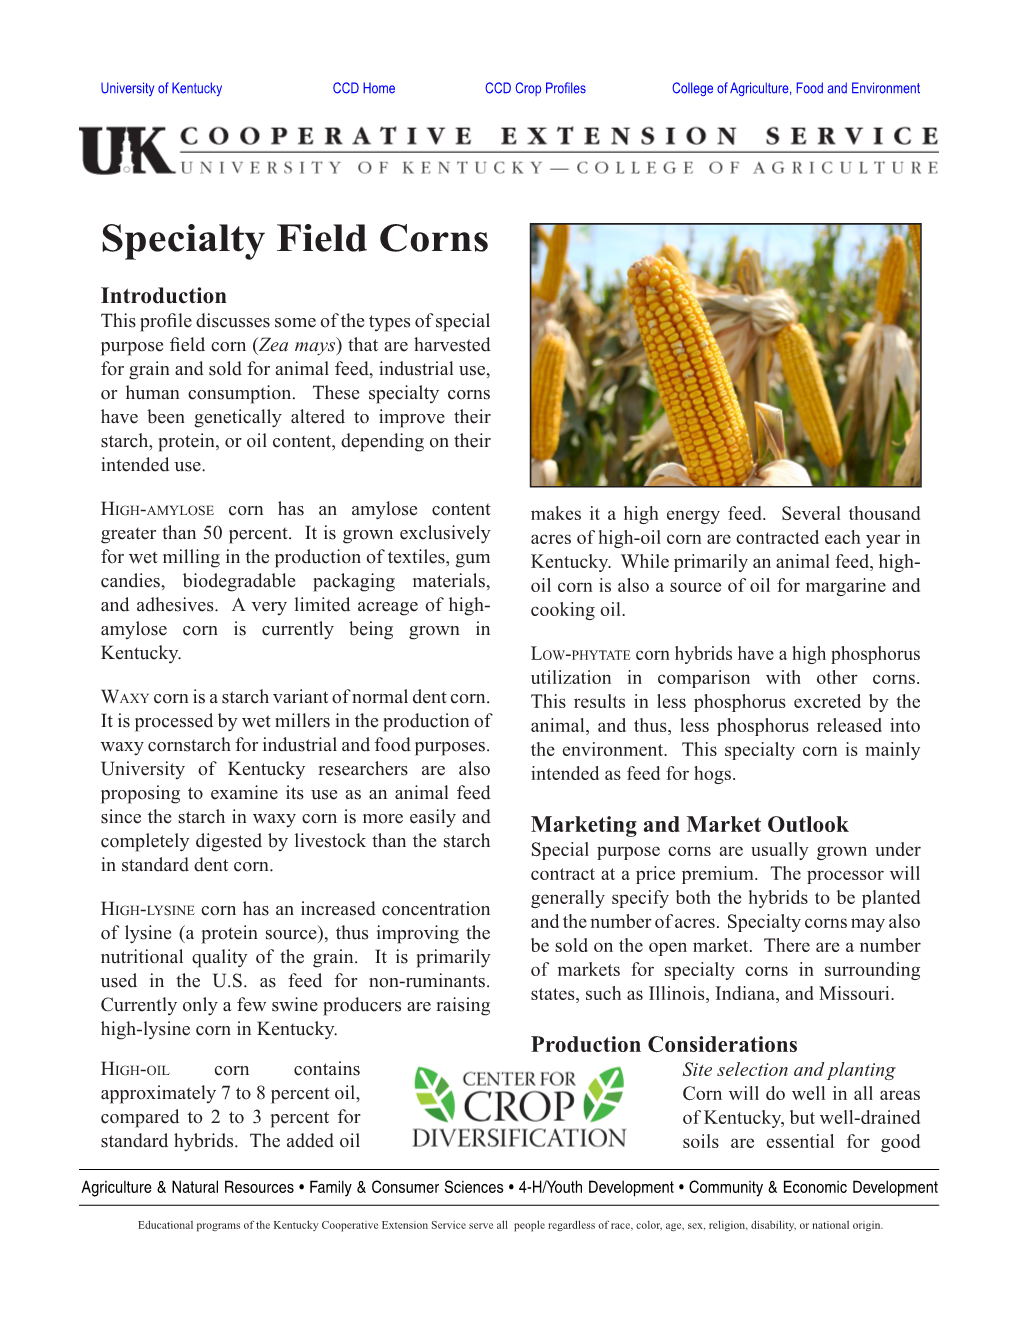 CCD Specialty Field Corns Profile